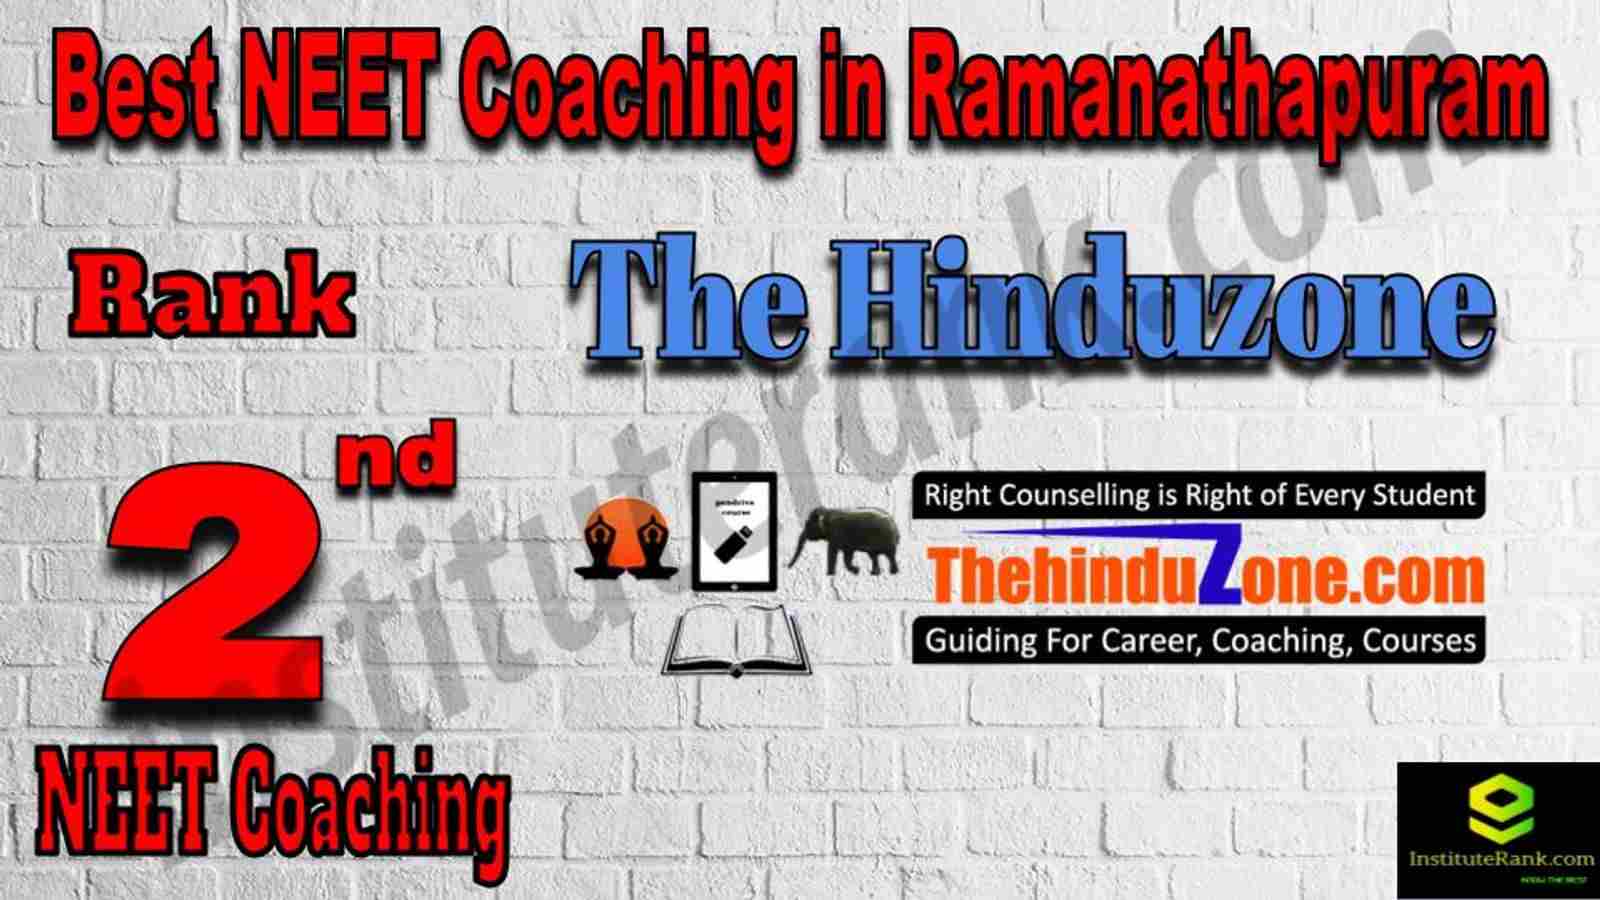 2nd Best NEET Coaching in Ramanathapuram